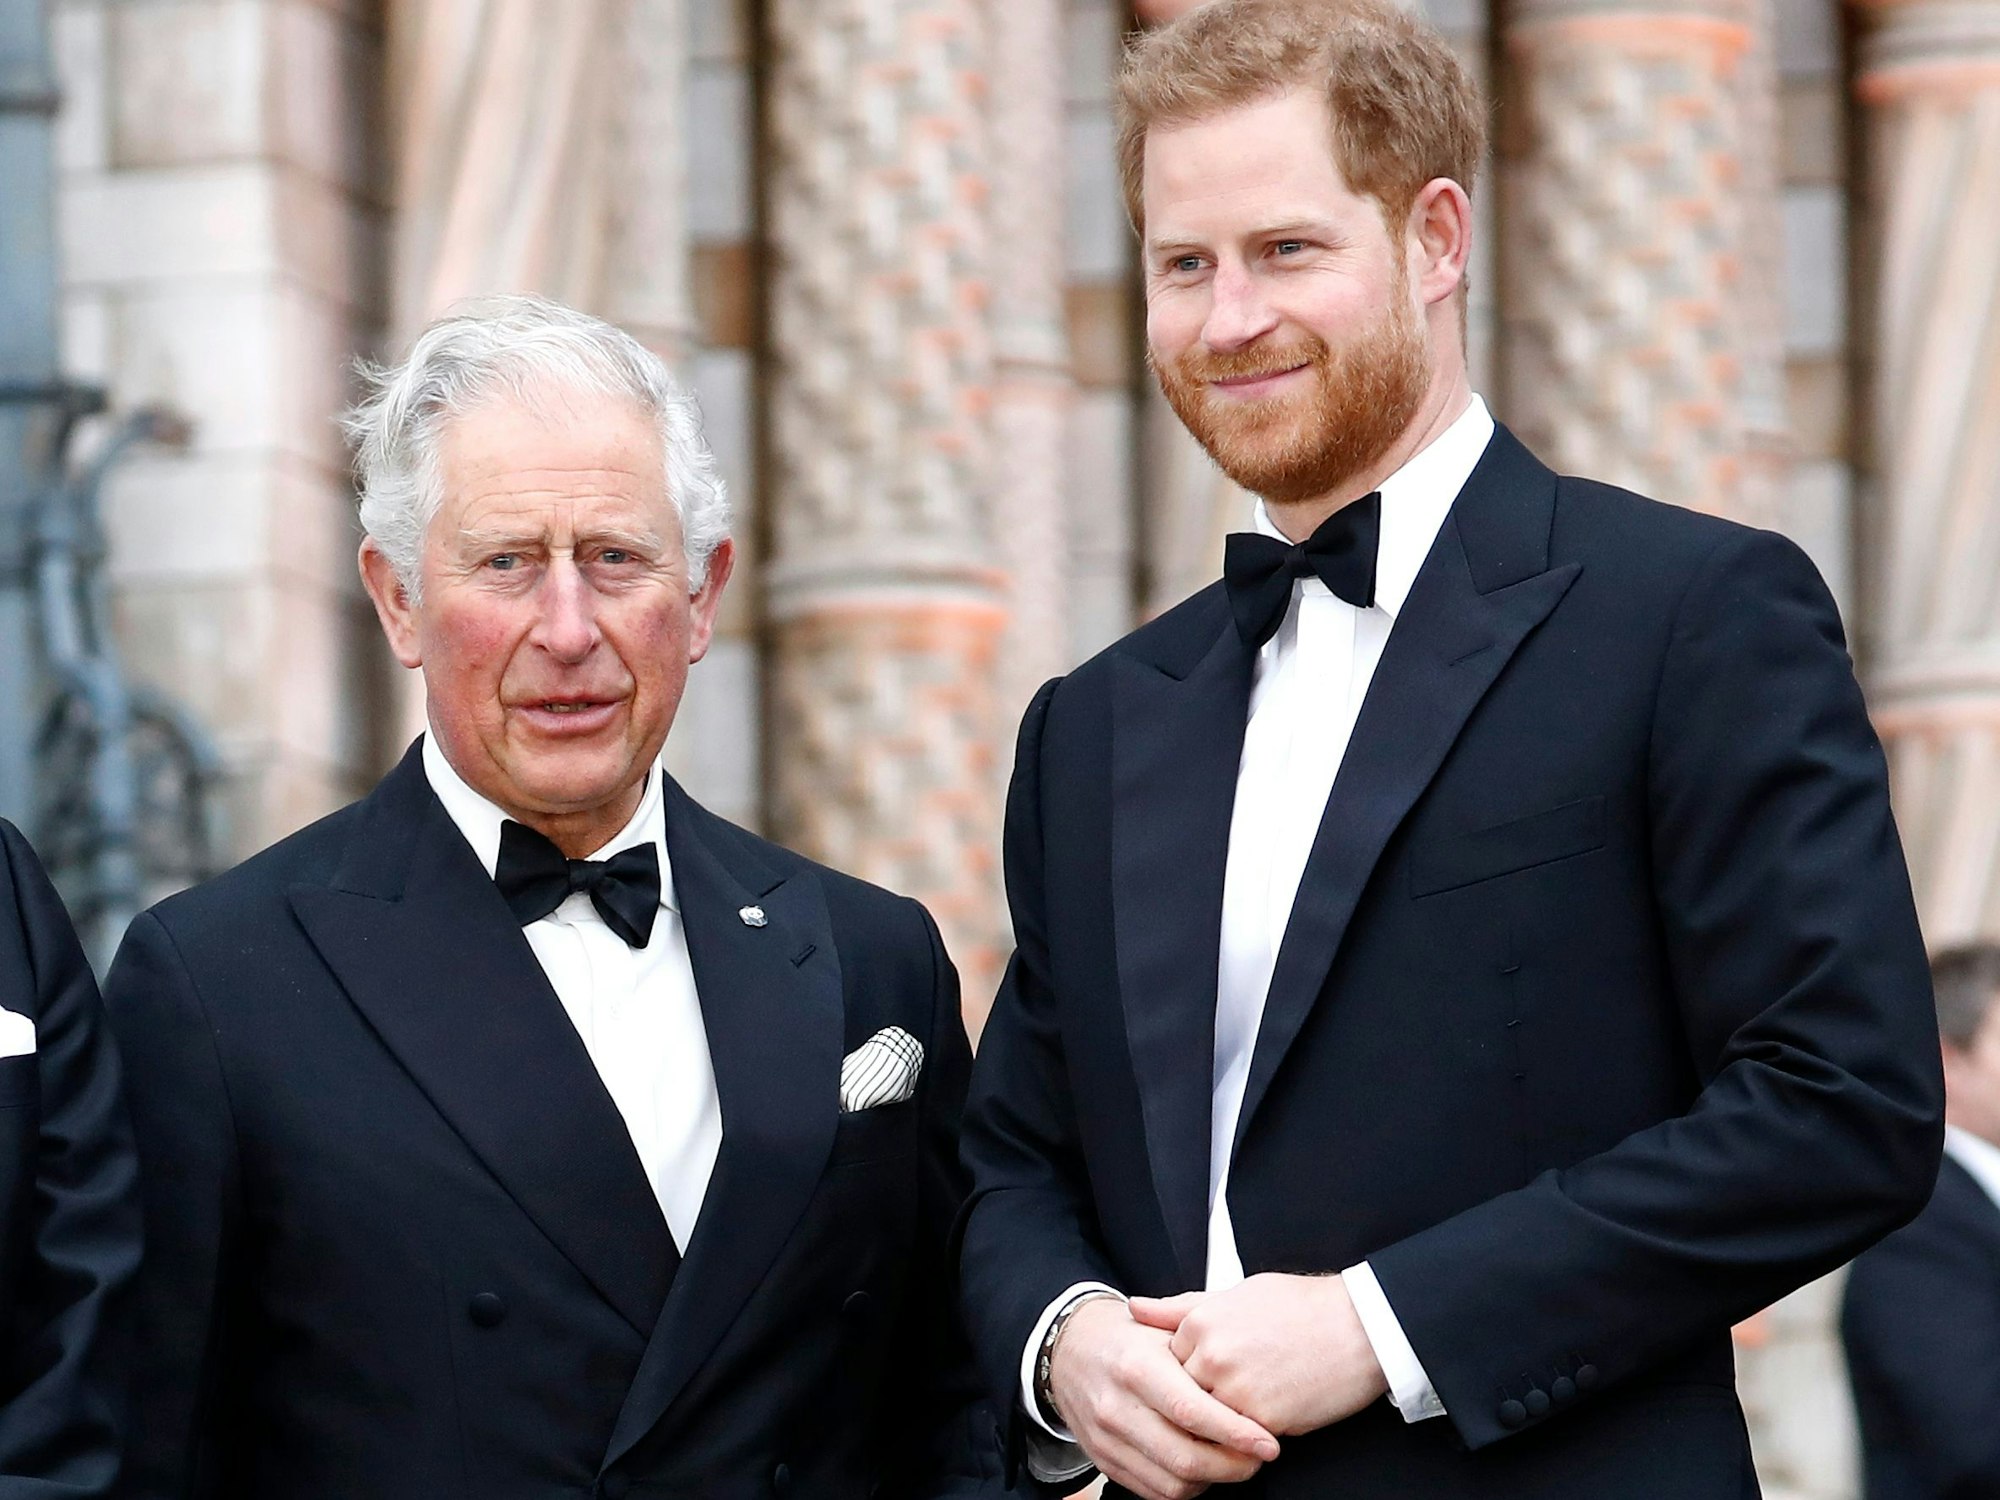 König Charles III. und Prinz Harry stehen in Abendgarderobe bei einem öffentlichen Termin nebeneinander.